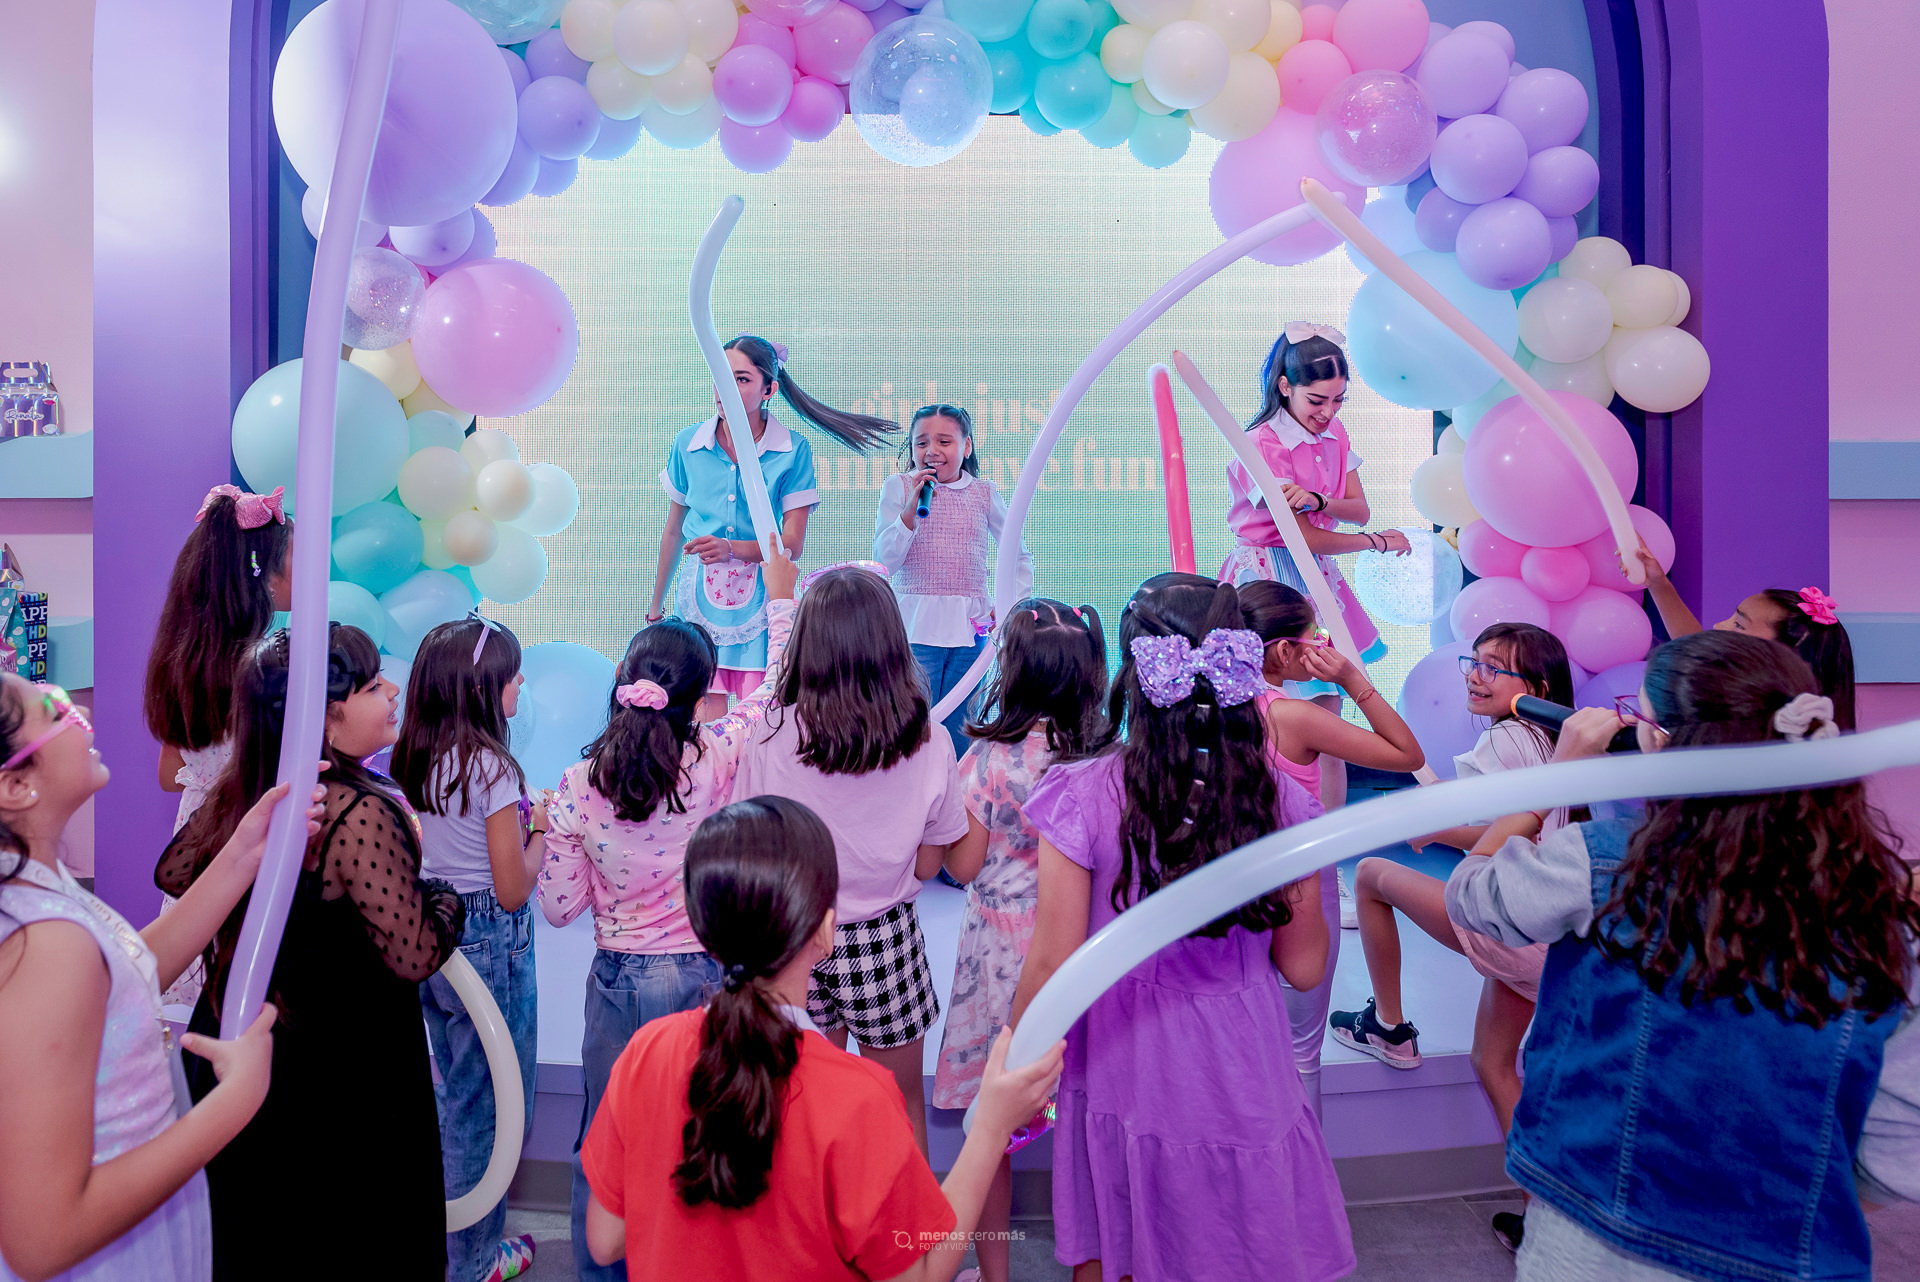 Fotografía de fiesta infantil: Renata celebrando su 9° cumpleaños en CandyBox Monterrey. La cumpleañera se encuentra en el escenario, sonriente y rodeada de sus amigas, quienes la acompañan en este día tan especial.